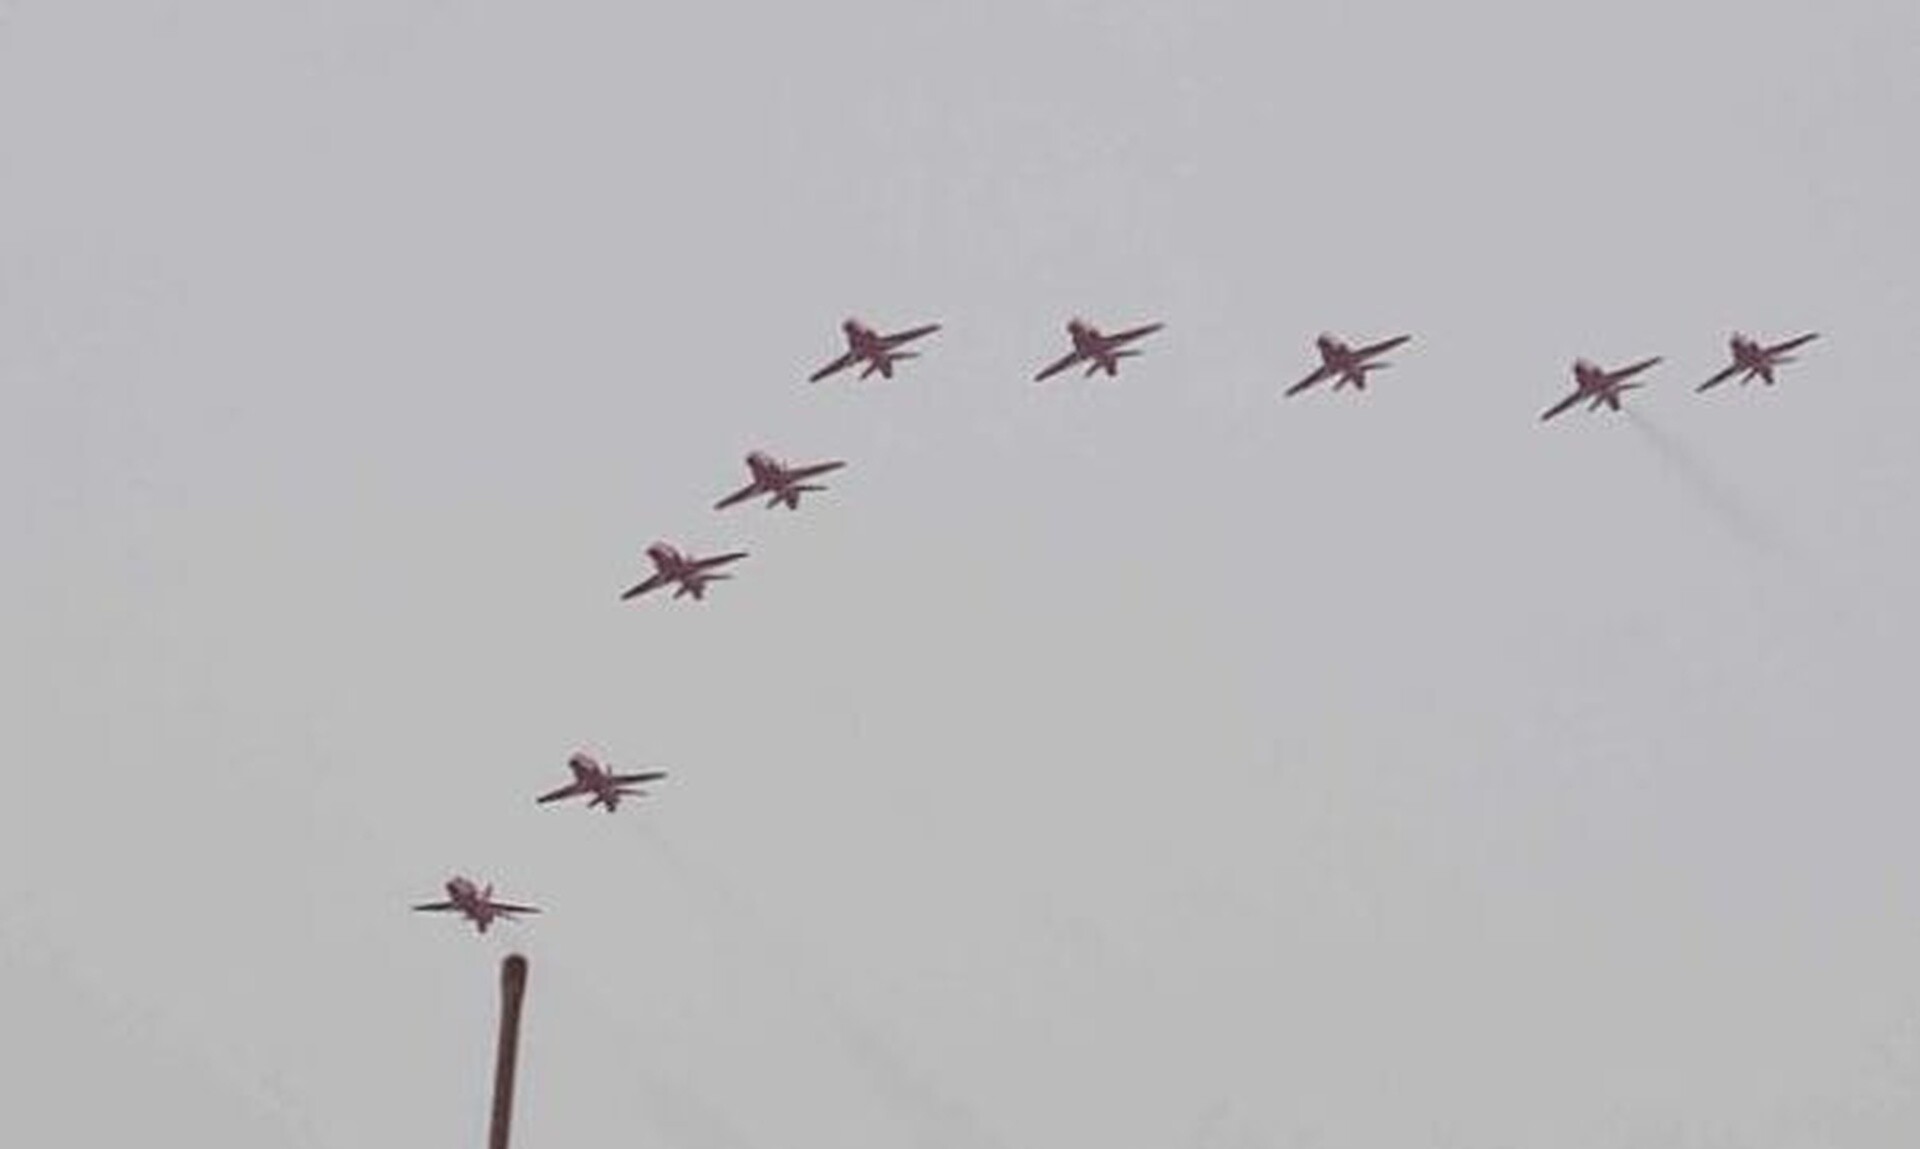 Αεροπορική επίδειξη των «Red Arrows» στο Φλοίσβo - Βίντεο από τις πτήσεις